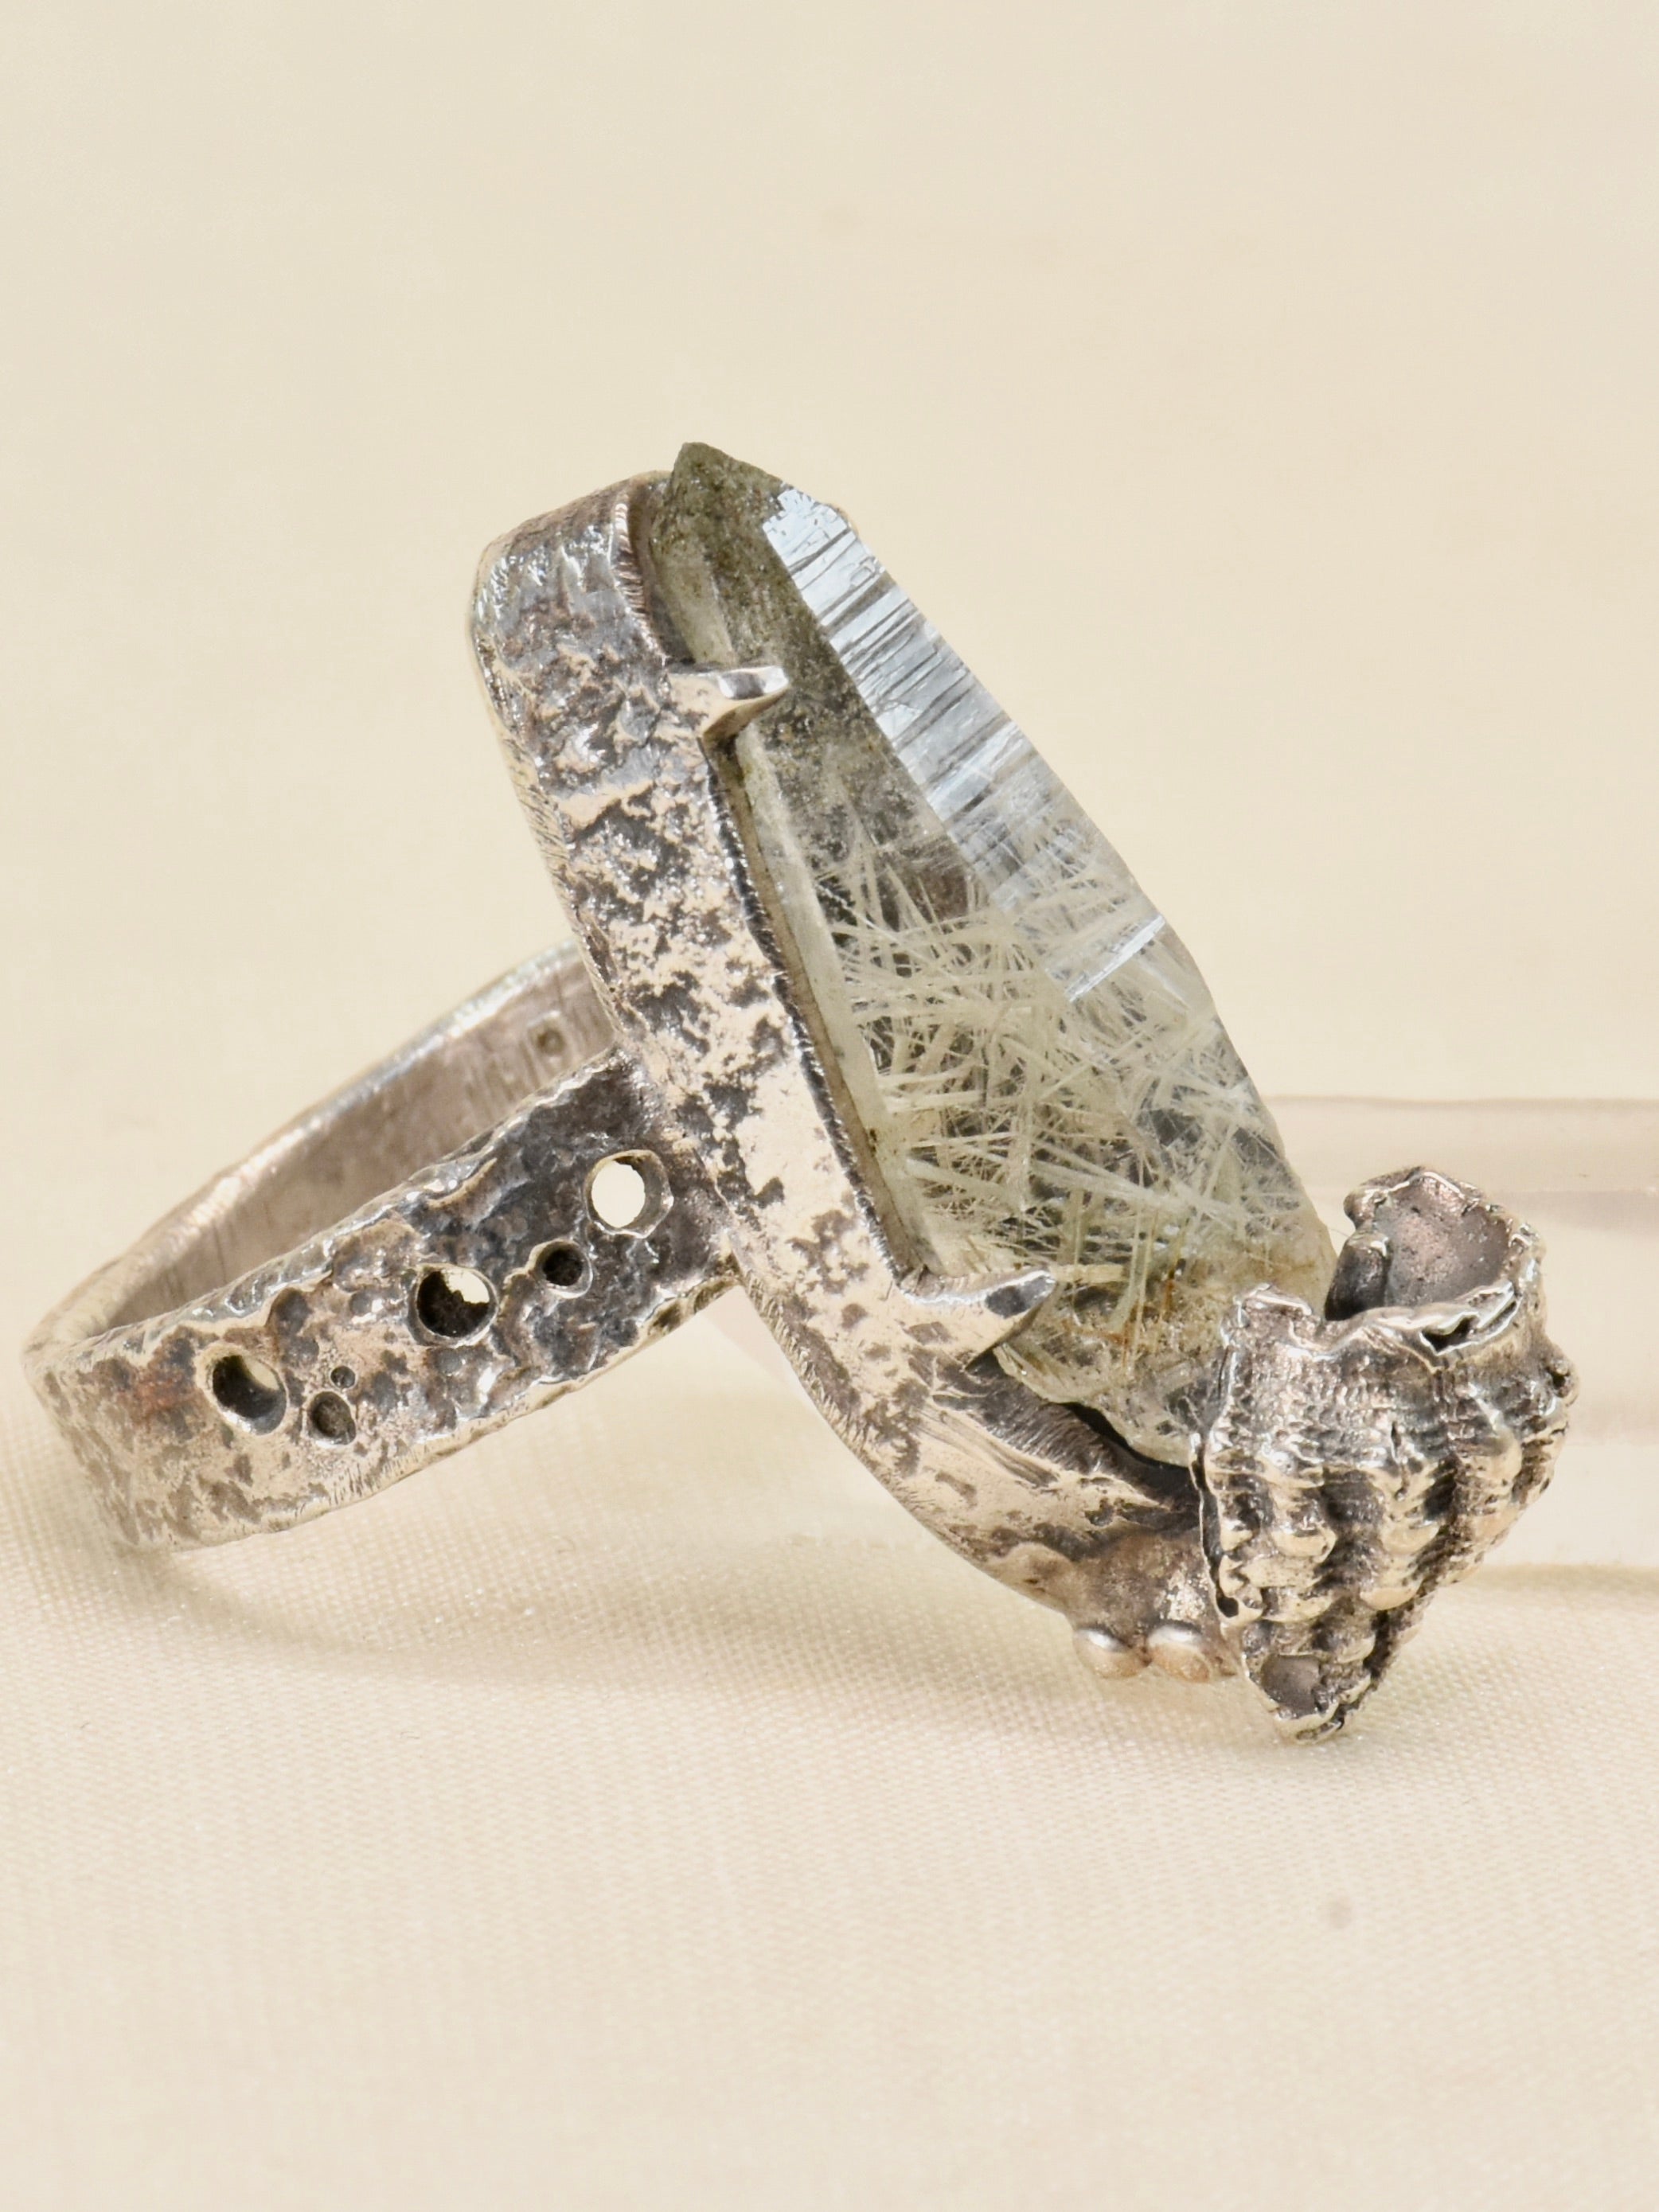 ガネーシュヒマール水晶と貝のリング